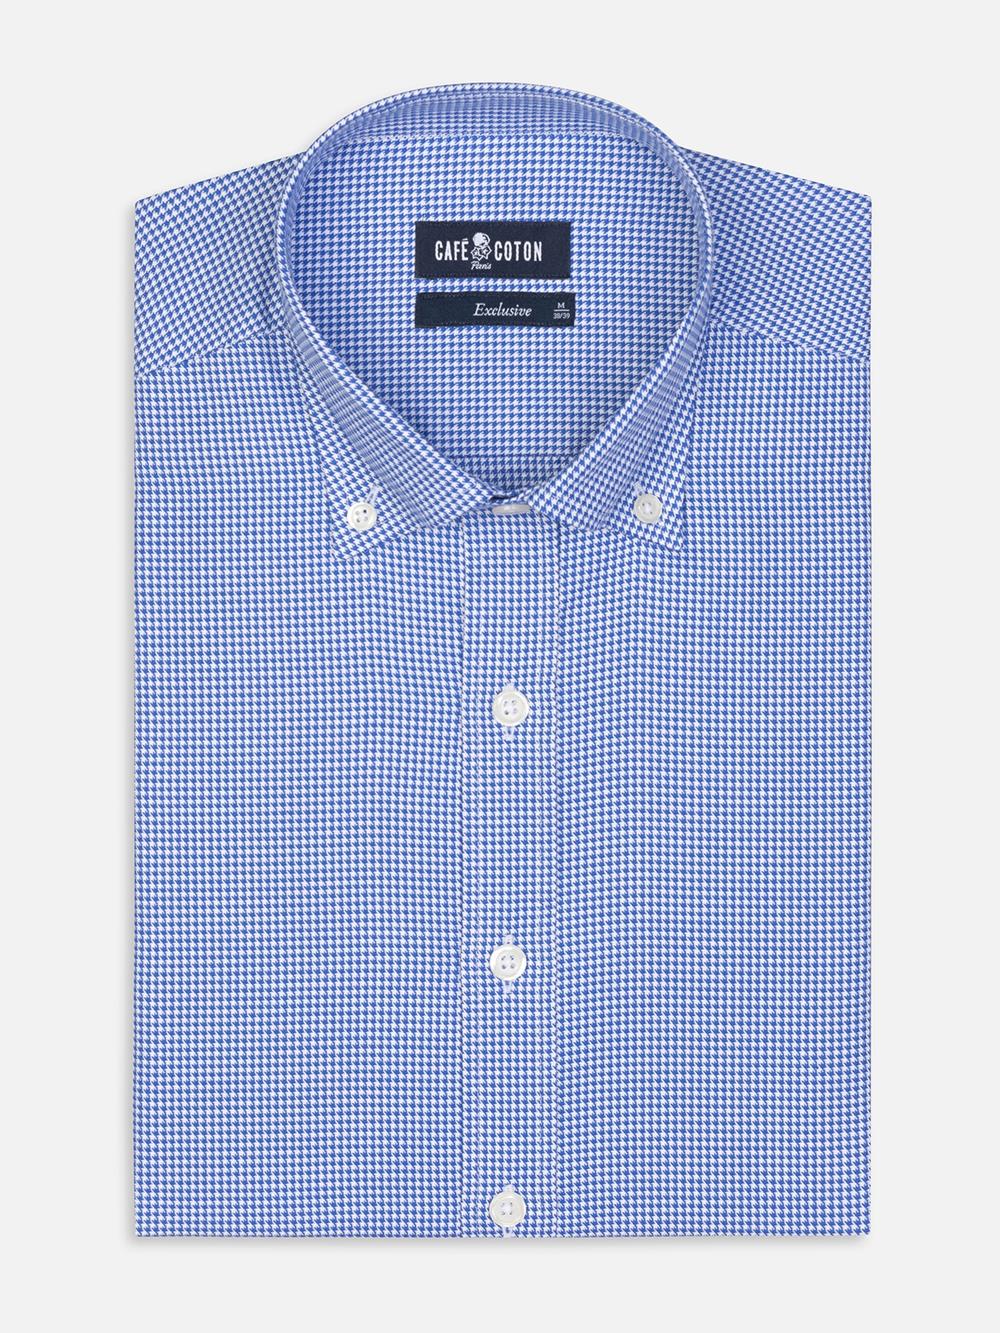 Tailliertes Tailliertes Hemd Landry aus blauem Vichykaro - Buttondown Kragen